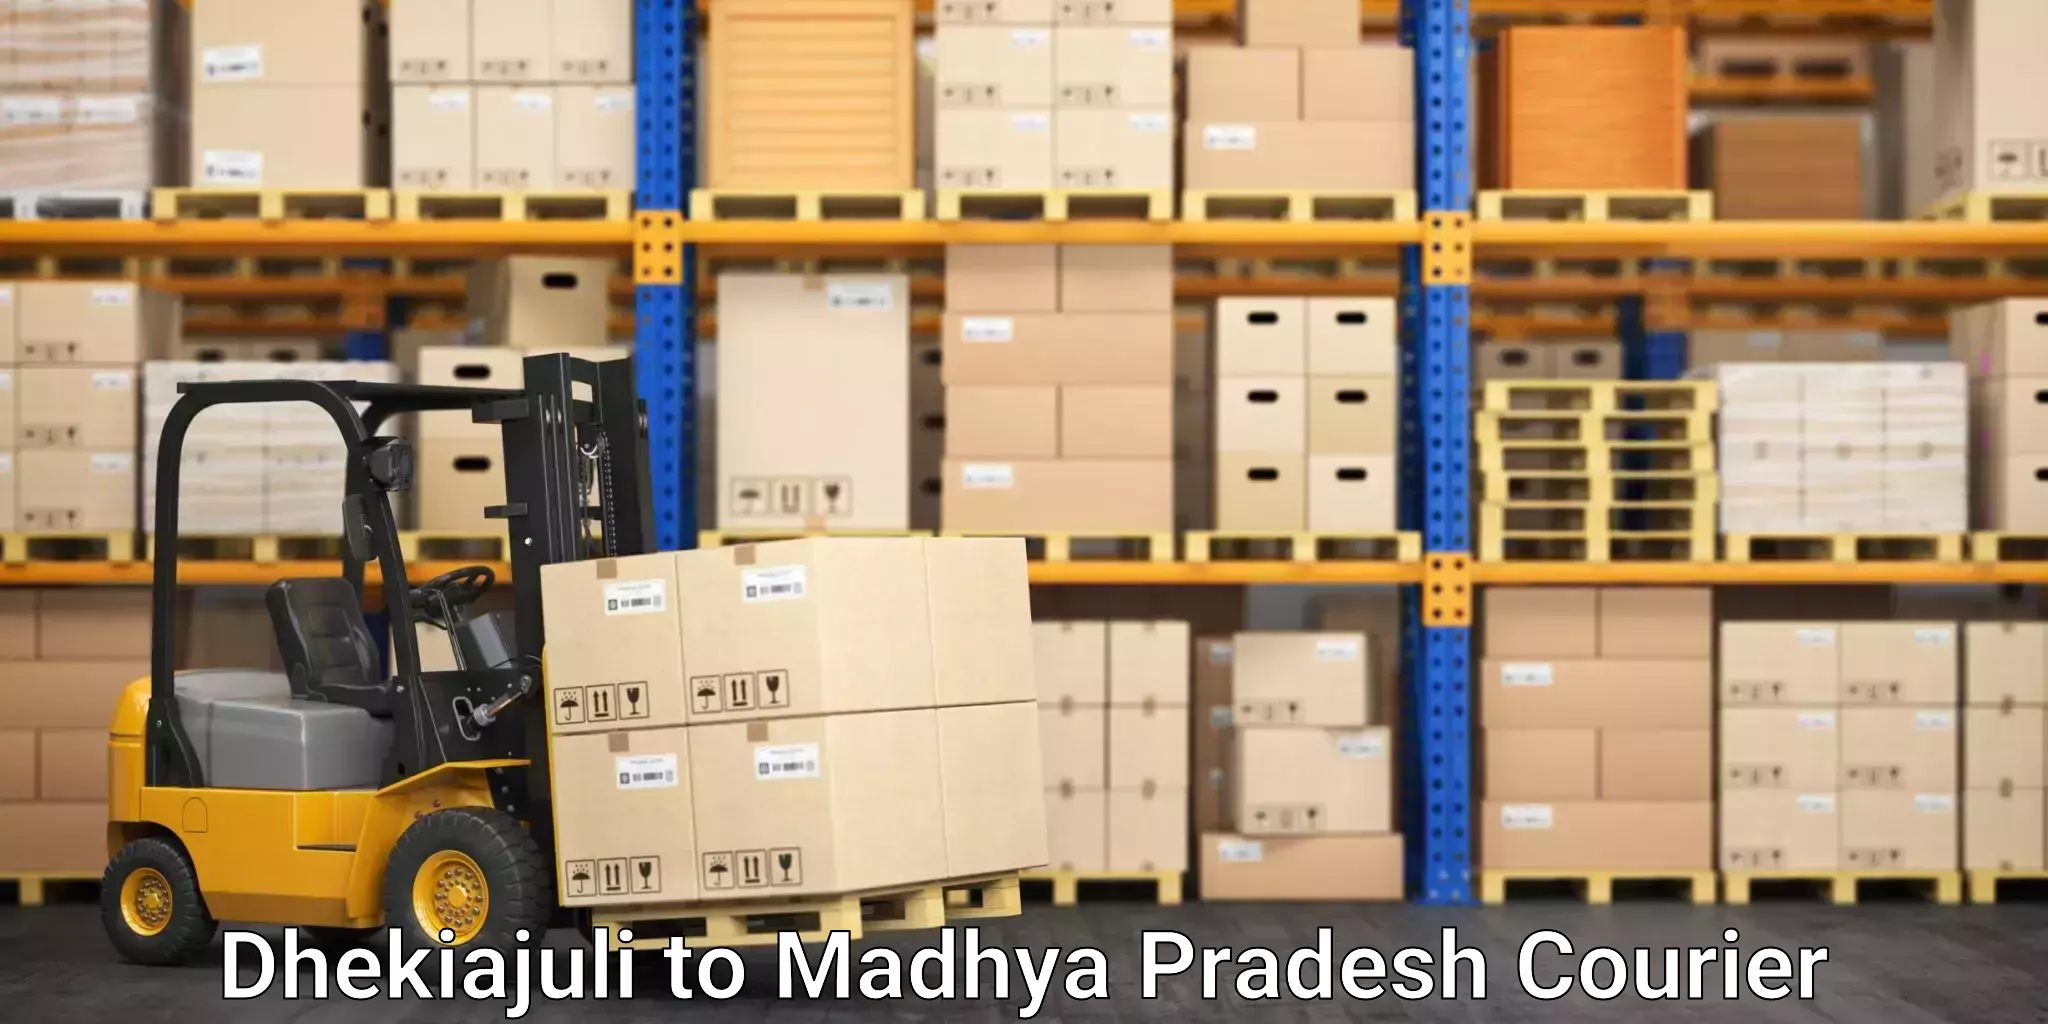 Urgent courier needs Dhekiajuli to Madhya Pradesh